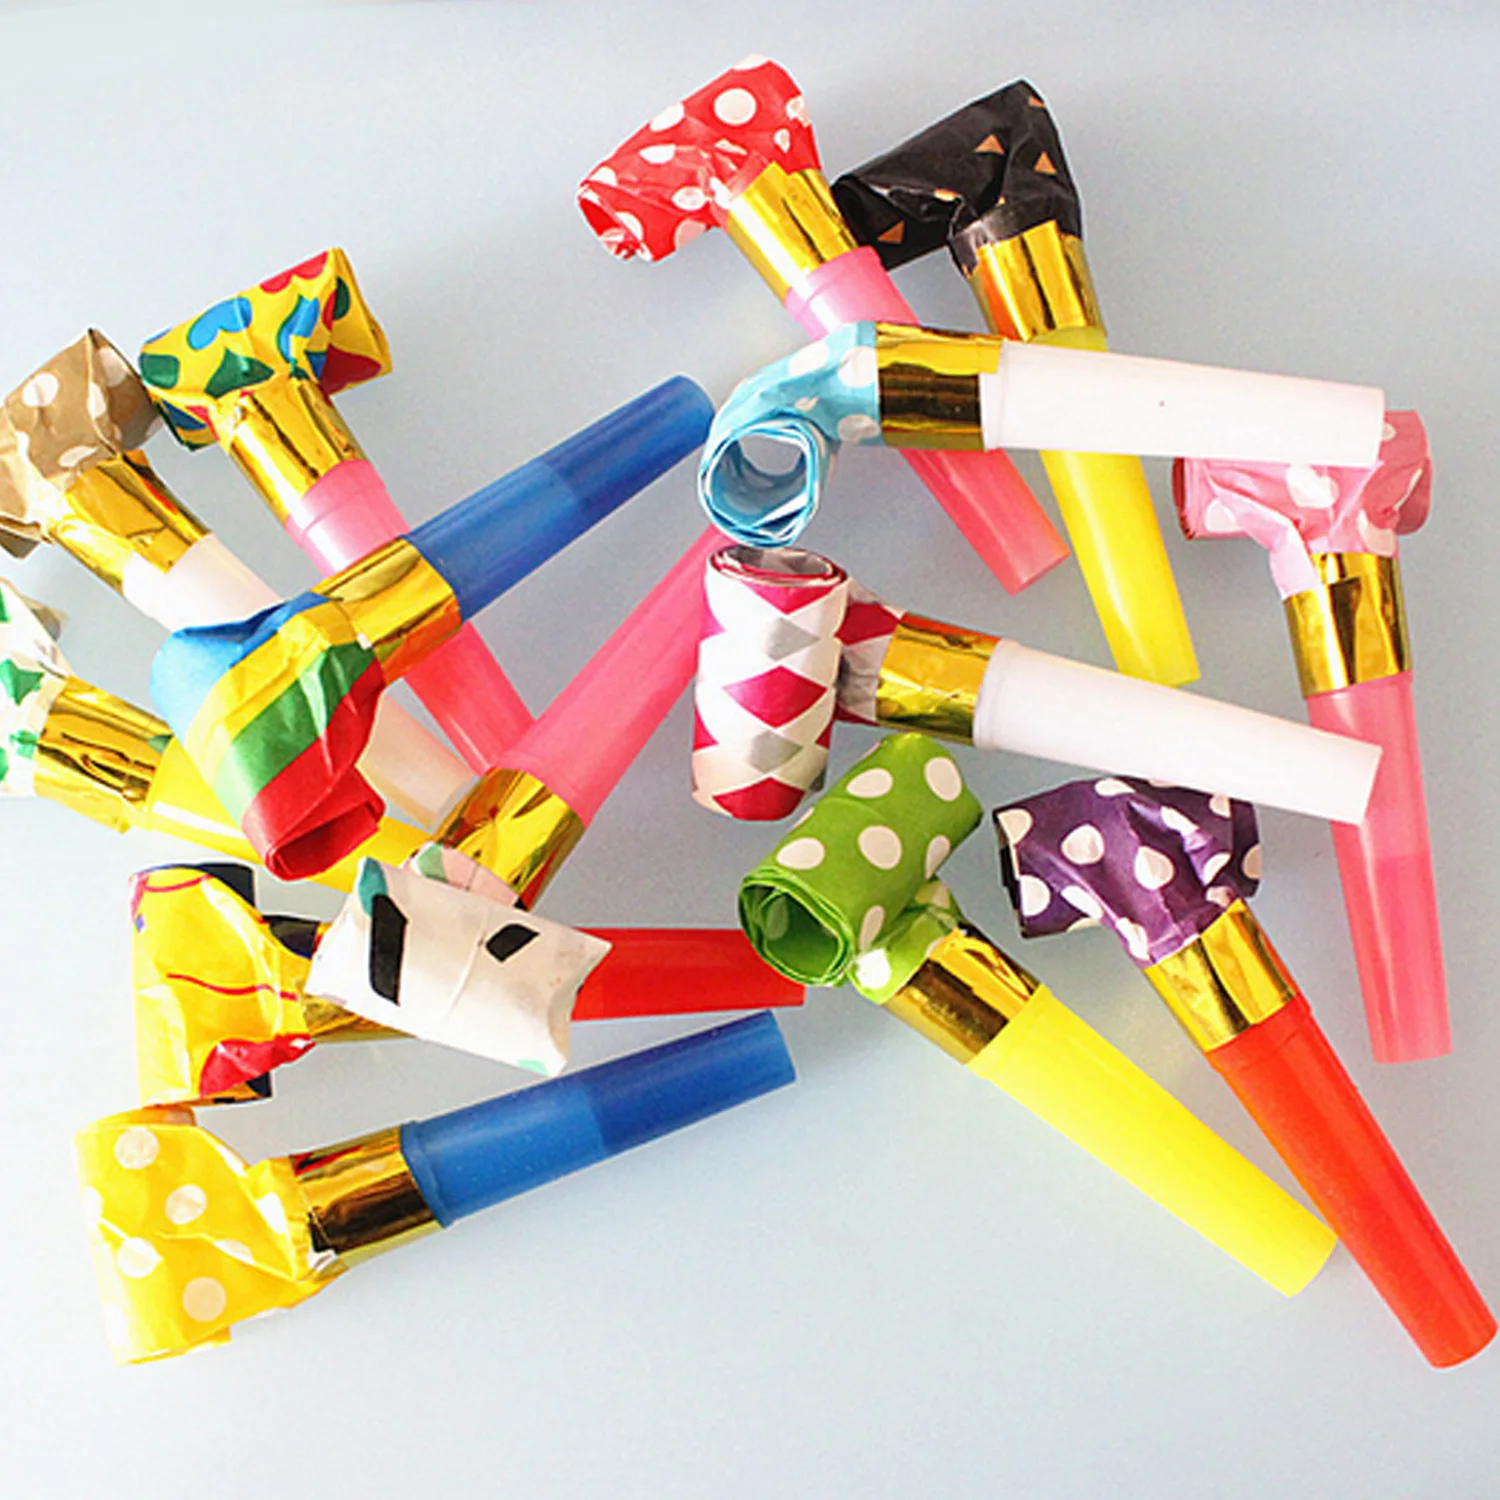 Behogar 20 шт Вечерние рожки Noisemakers выдувание свистки игрушки для сувениры для вечеринки ко дню рождения случайный стиль